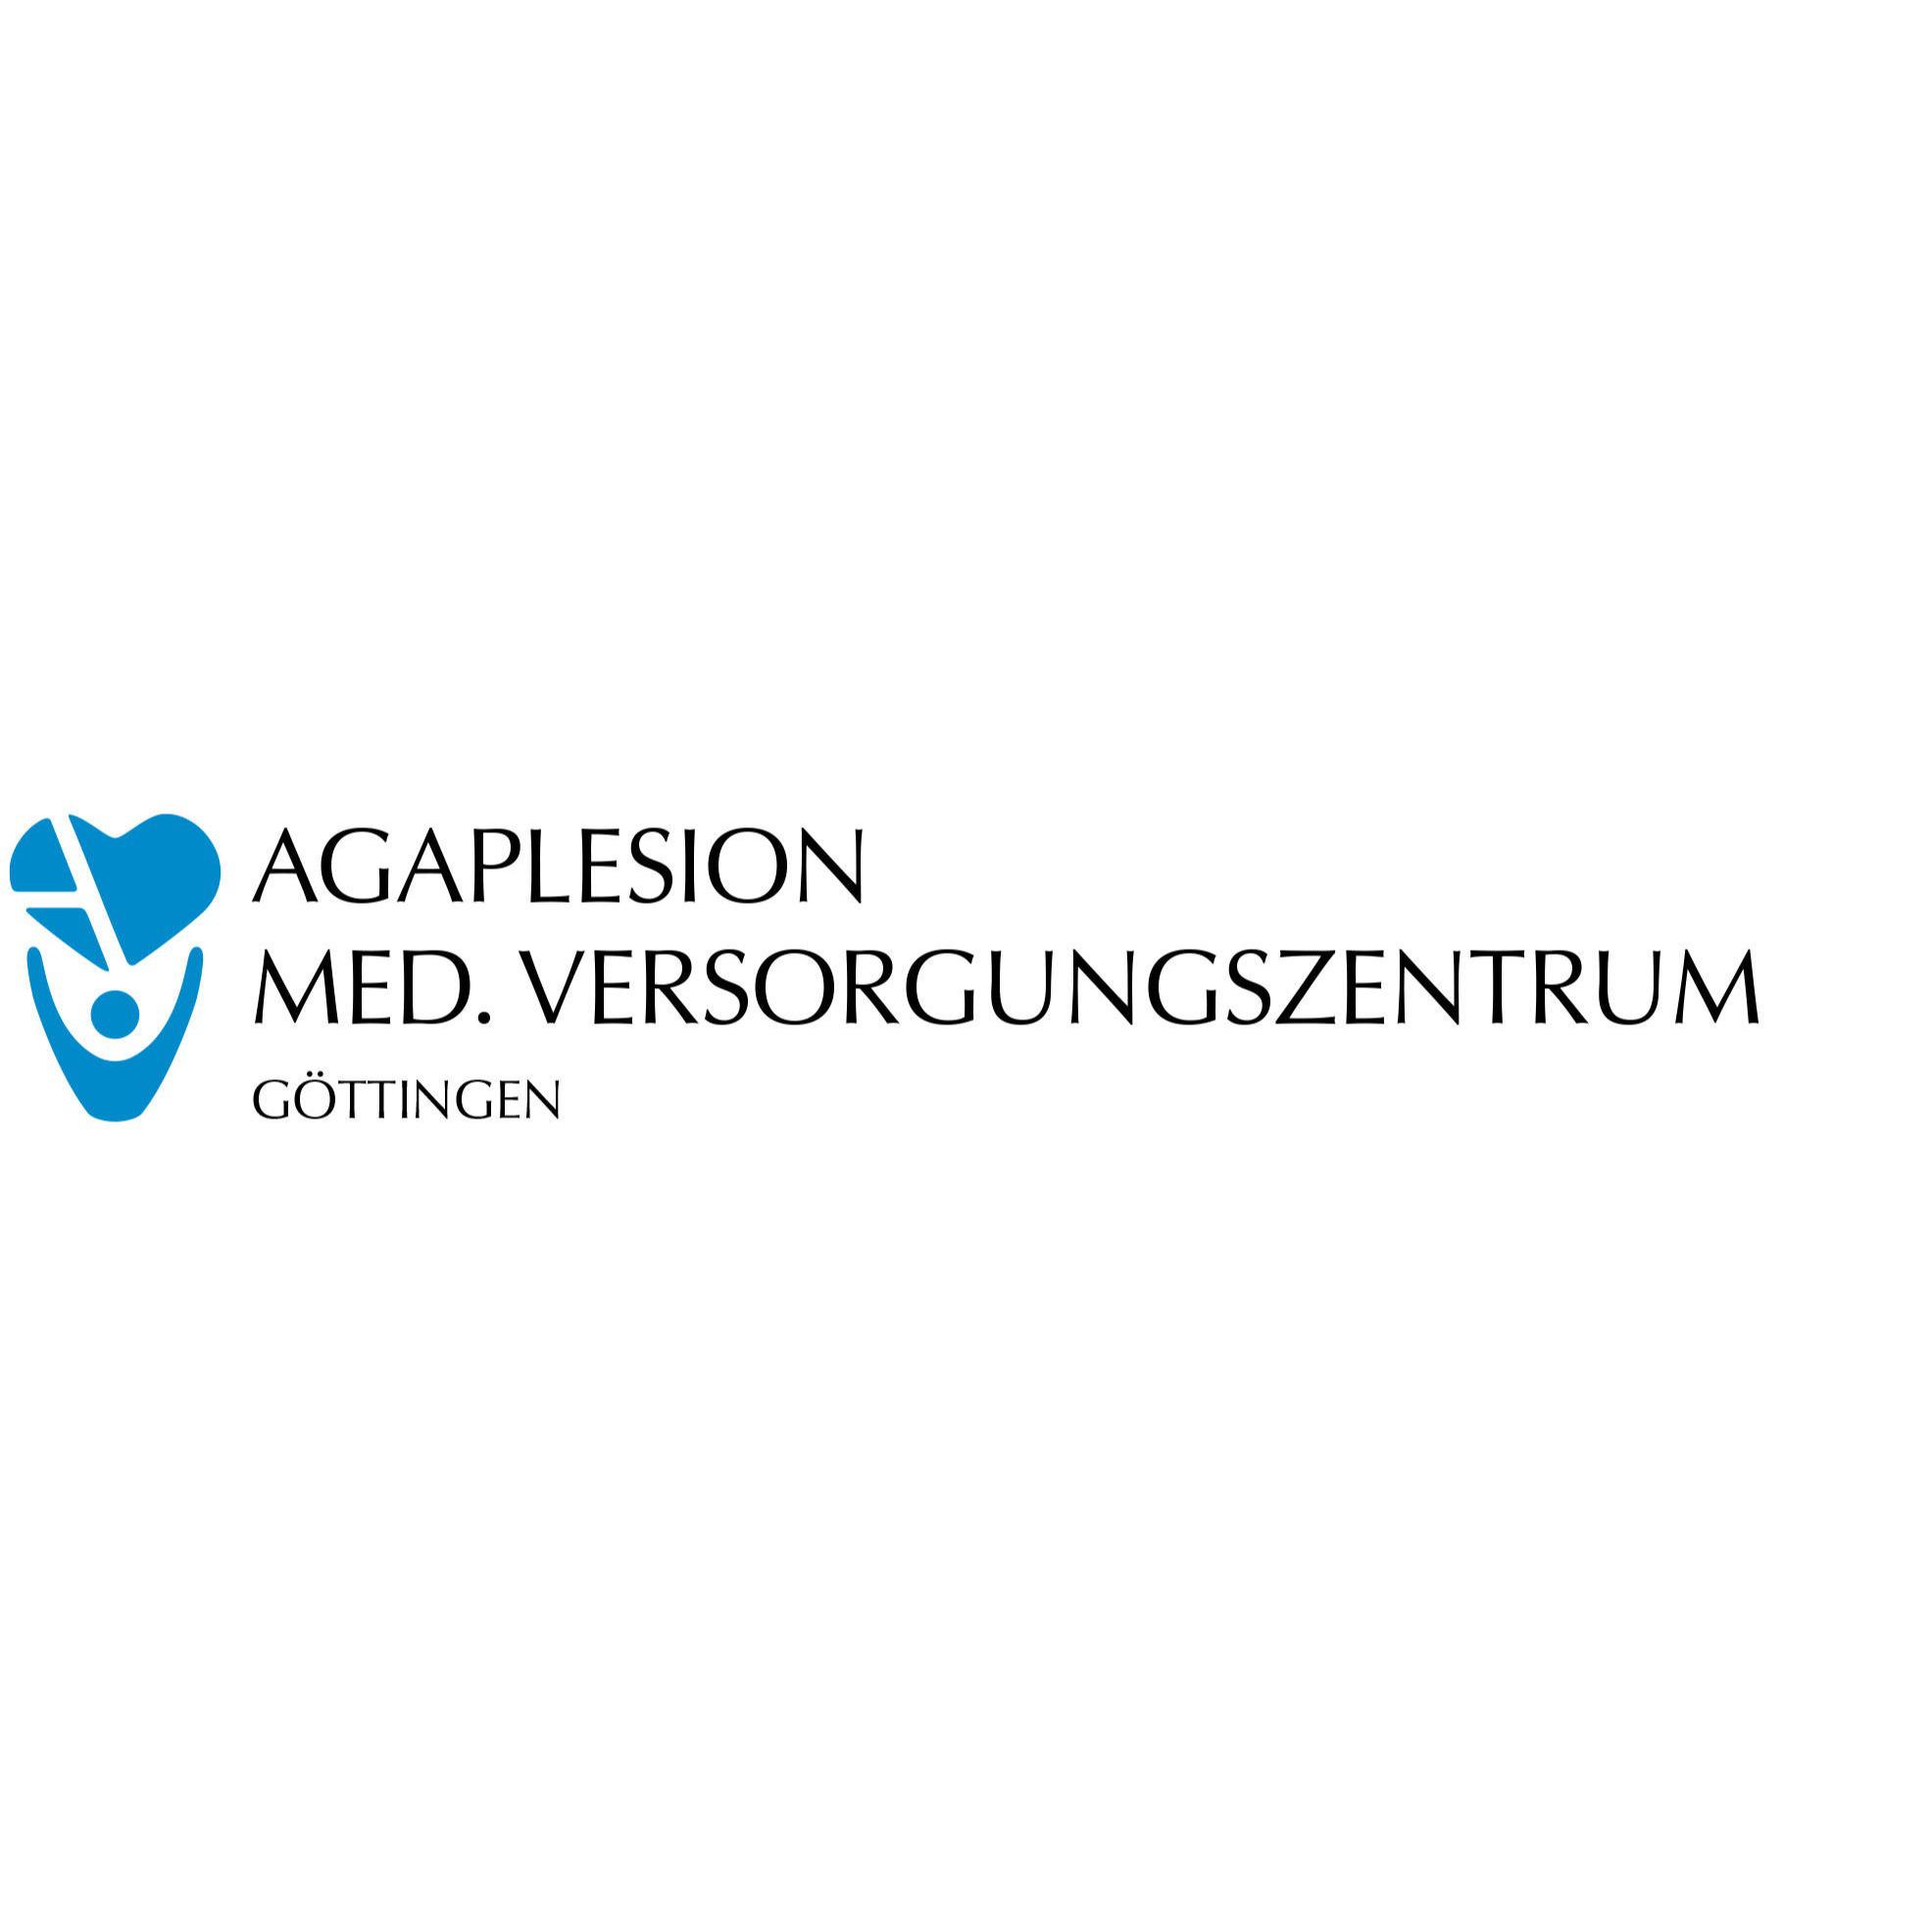 AGAPLESION MED. VERSORGUNGSZENTRUM GÖTTINGEN in Northeim - Logo